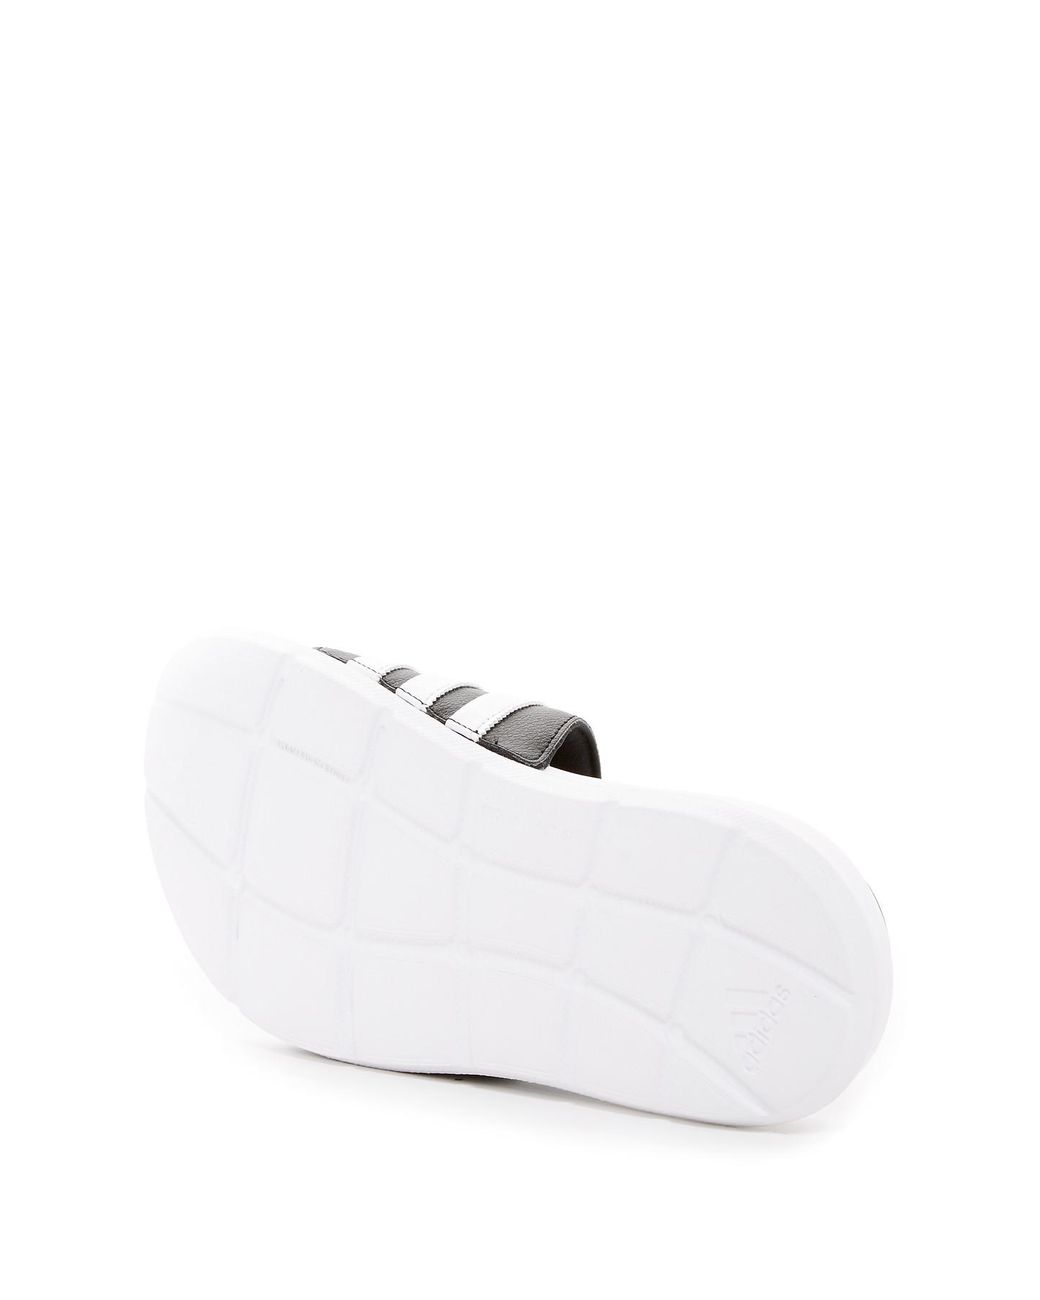 adidas Originals Superstar 4g Slide Sandal (men's) for Men | Lyst